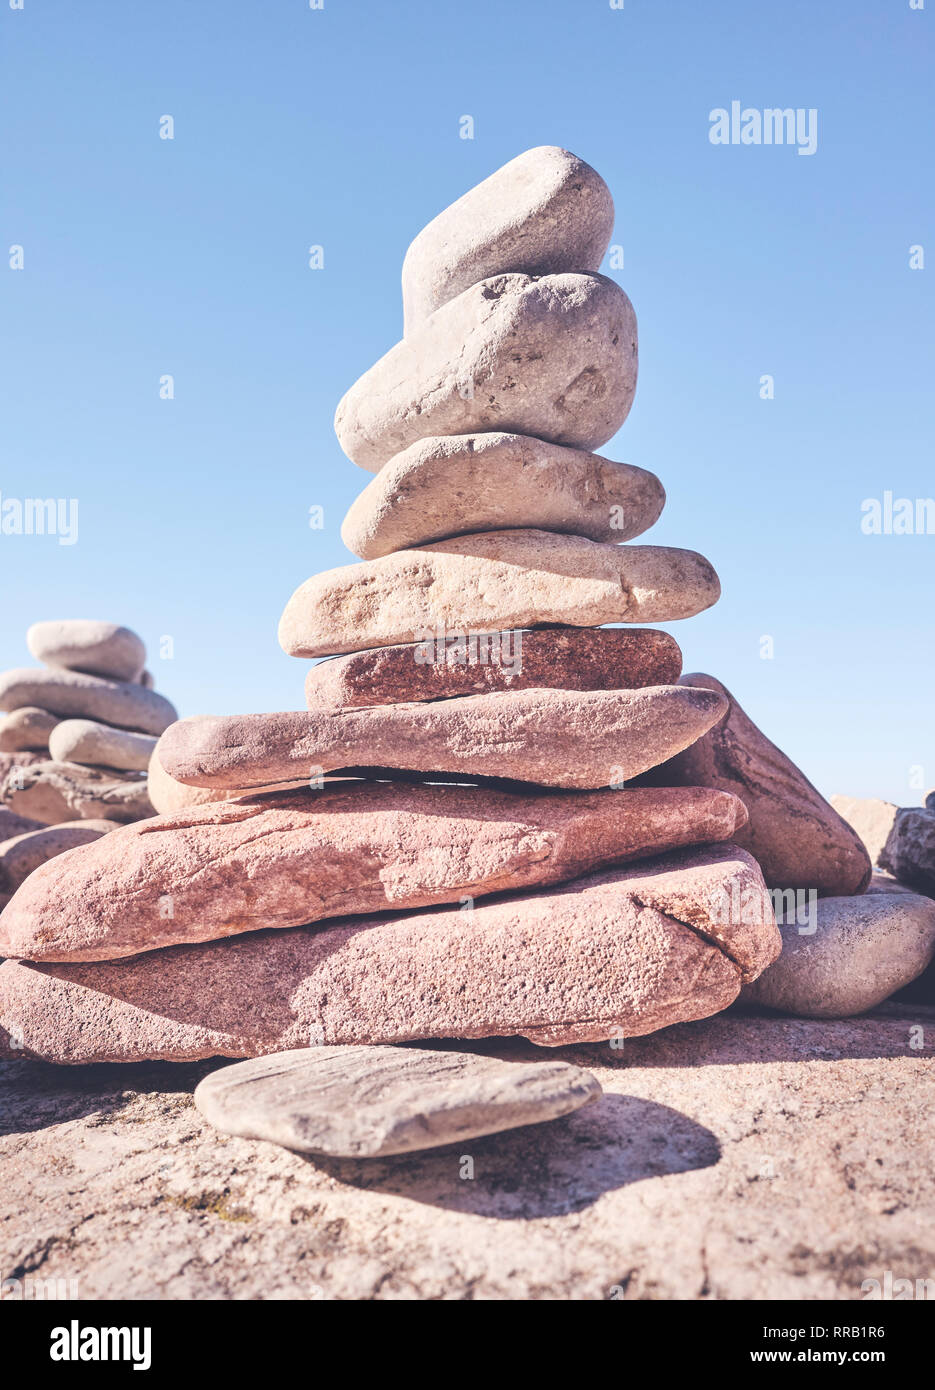 Pyramide de pierre, l'équilibre et l'harmonie concept, selective focus, harmonisation des couleurs appliquées. Banque D'Images